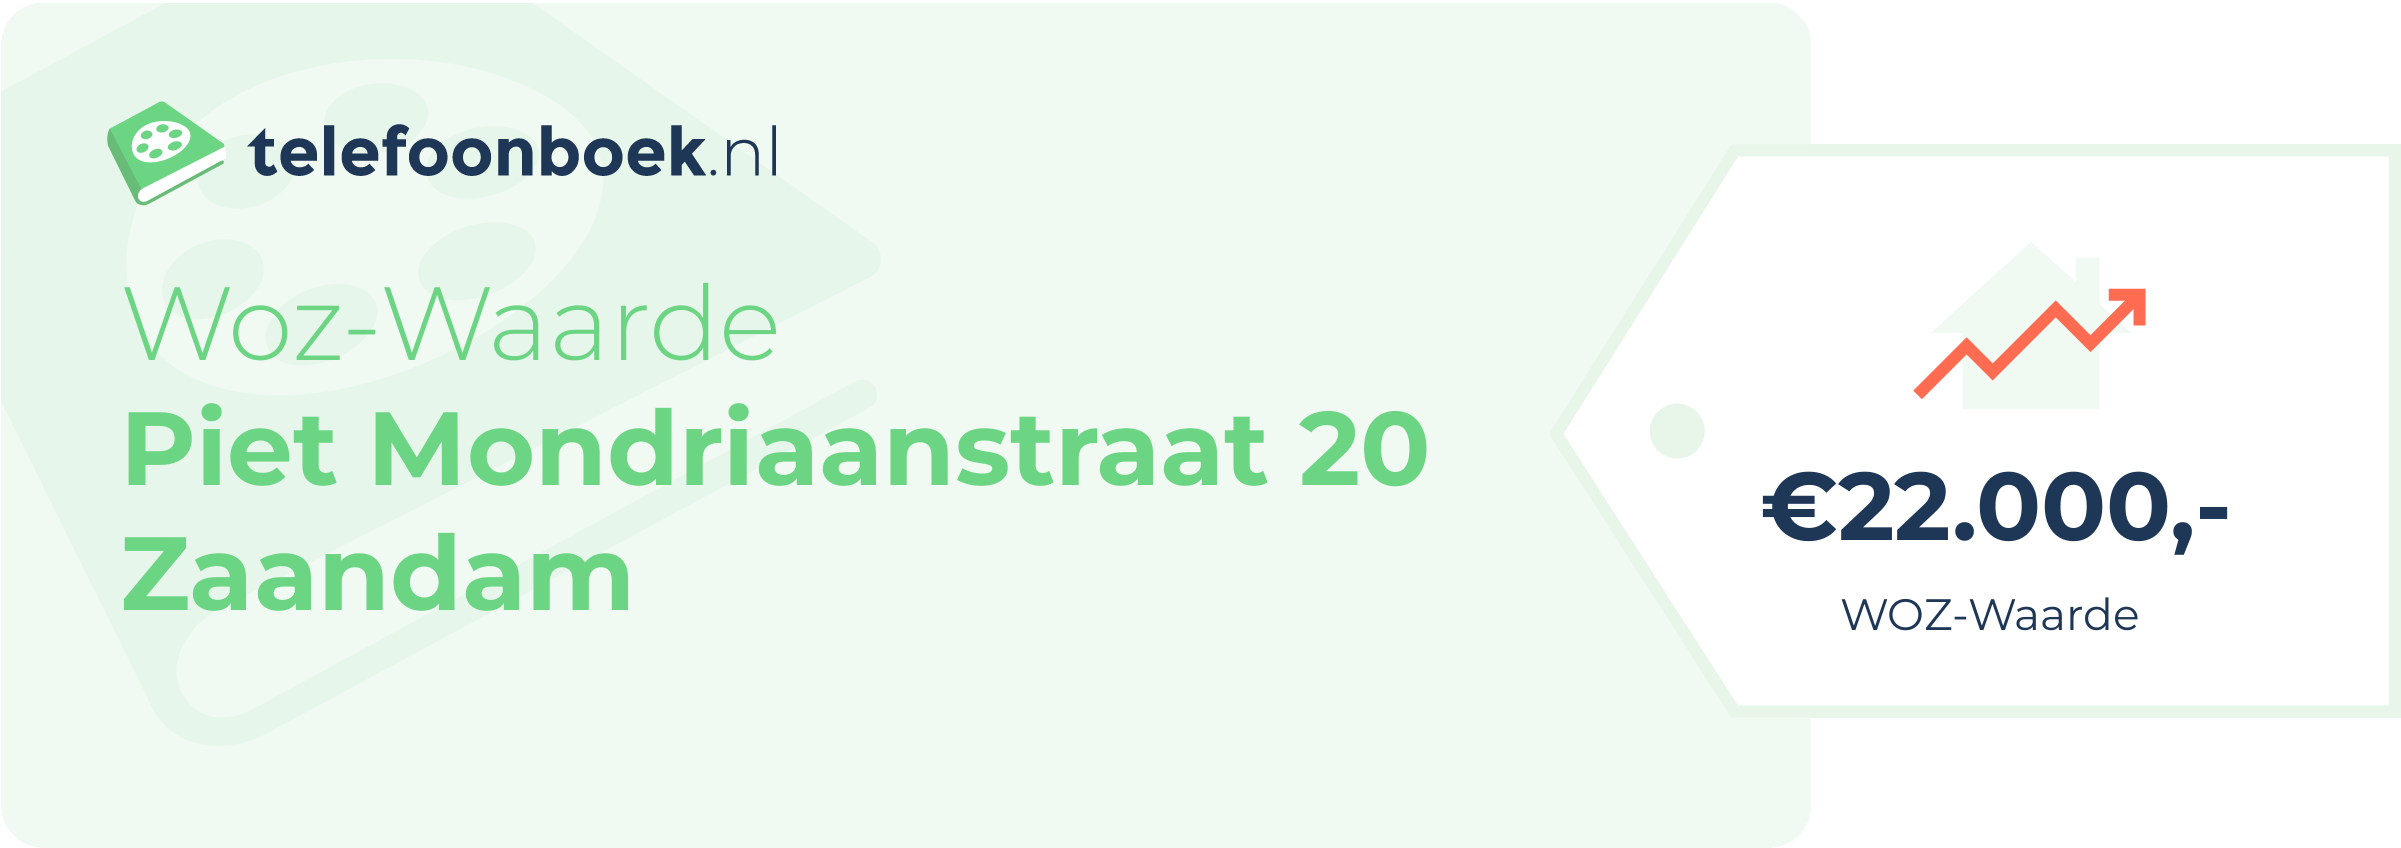 WOZ-waarde Piet Mondriaanstraat 20 Zaandam